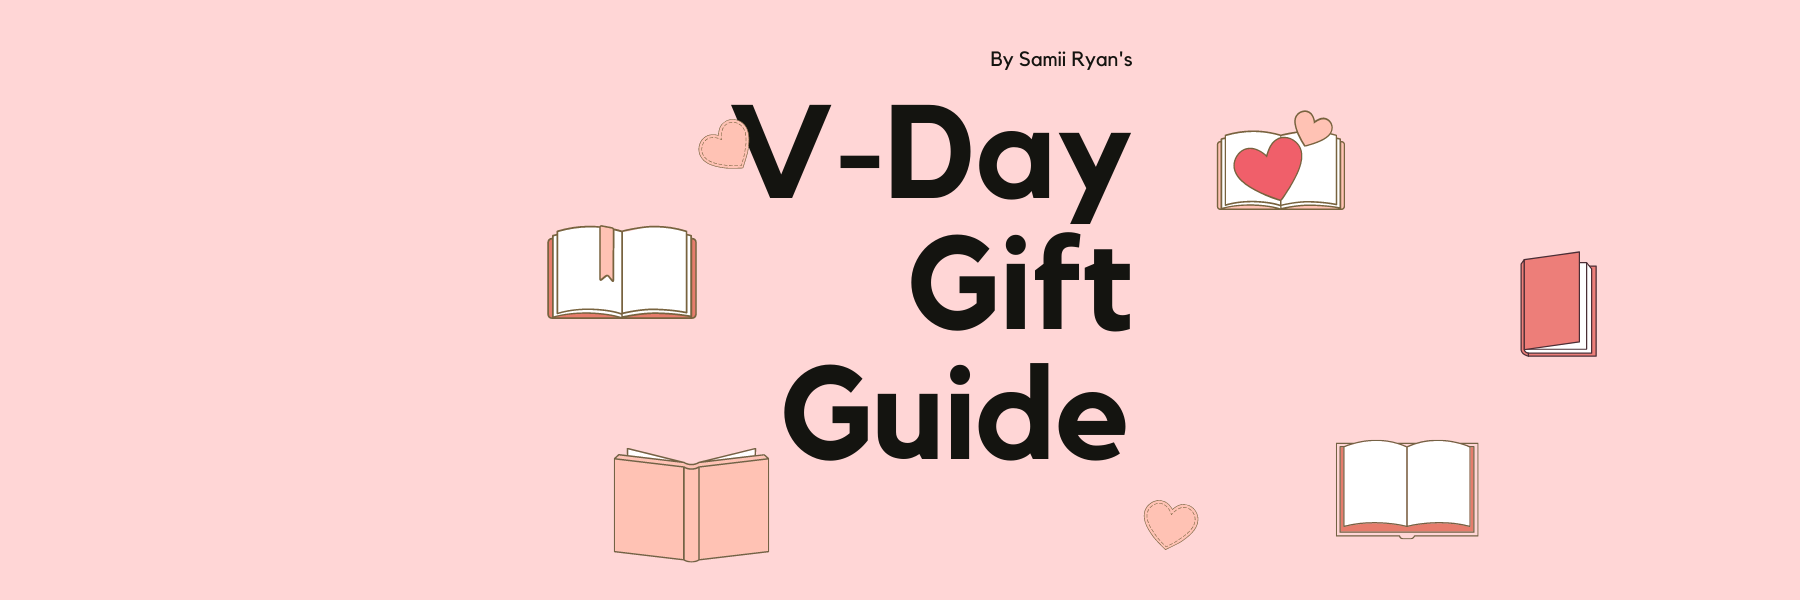 V-Day Gift Guide